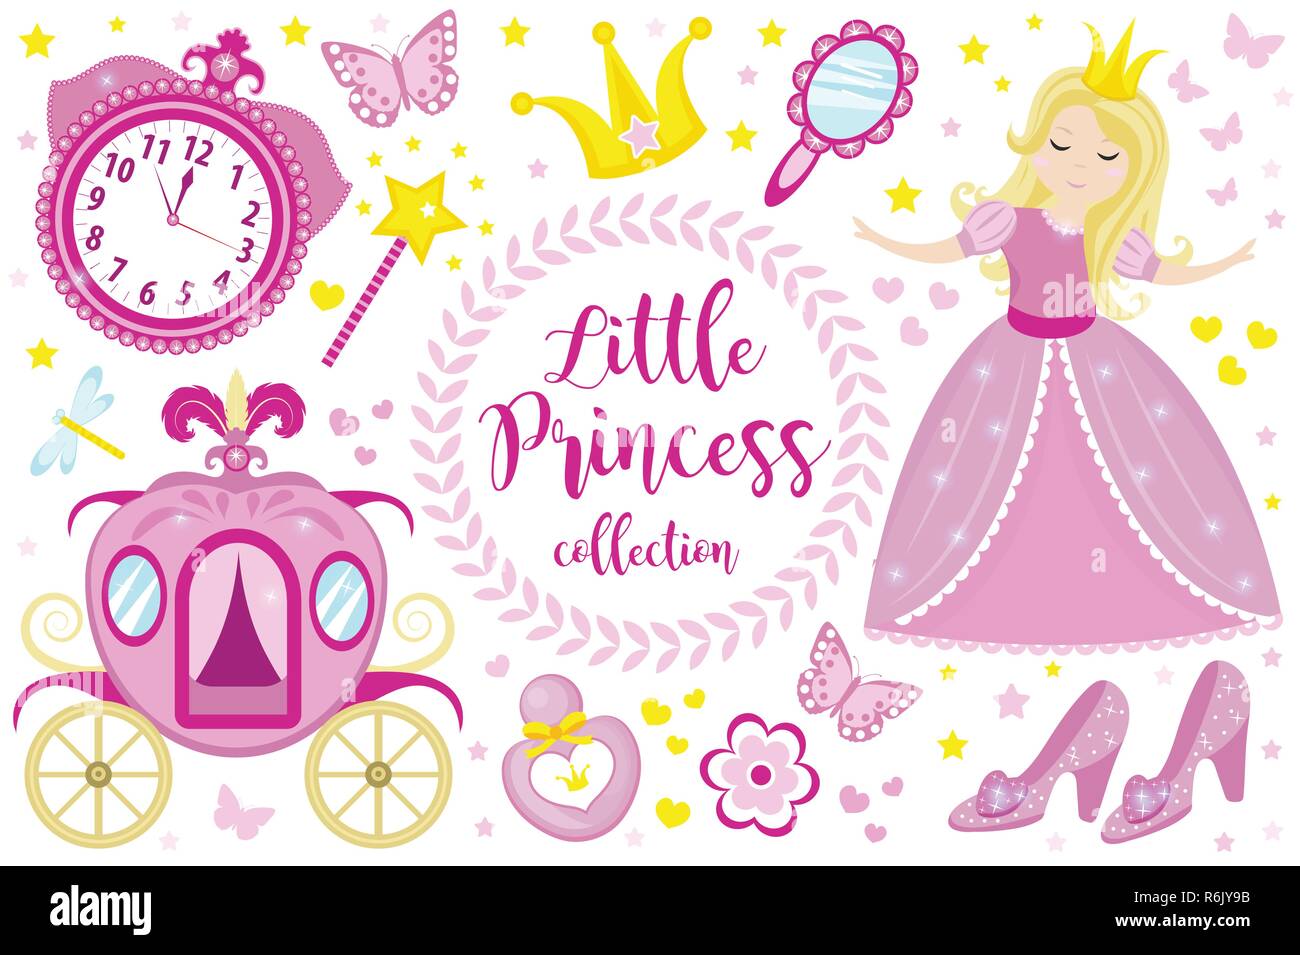 Kleine Prinzessin niedliche rosa stellen Sie die Objekte, Icons Cartoon Stil. Hübsches Mädchen in schönen Kleid mit einer Krone, Schlitten, Spiegel, Parfüm Kollektion. Auf weissem Hintergrund. Vector Illustration. Stock Vektor